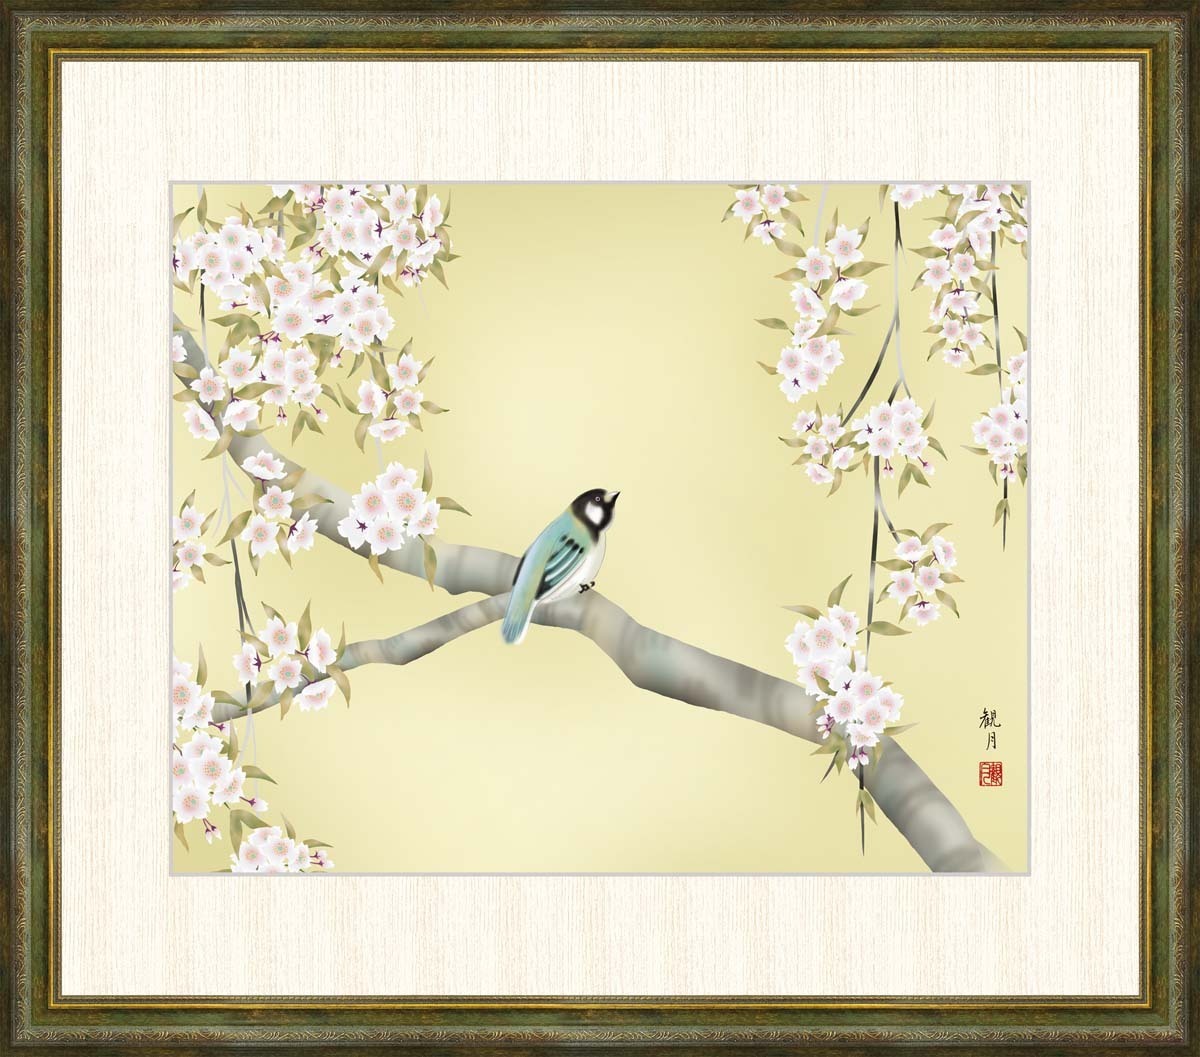 高精細デジタル版画 額装絵画 森山観月作 「桜花に小鳥」 F8_画像1